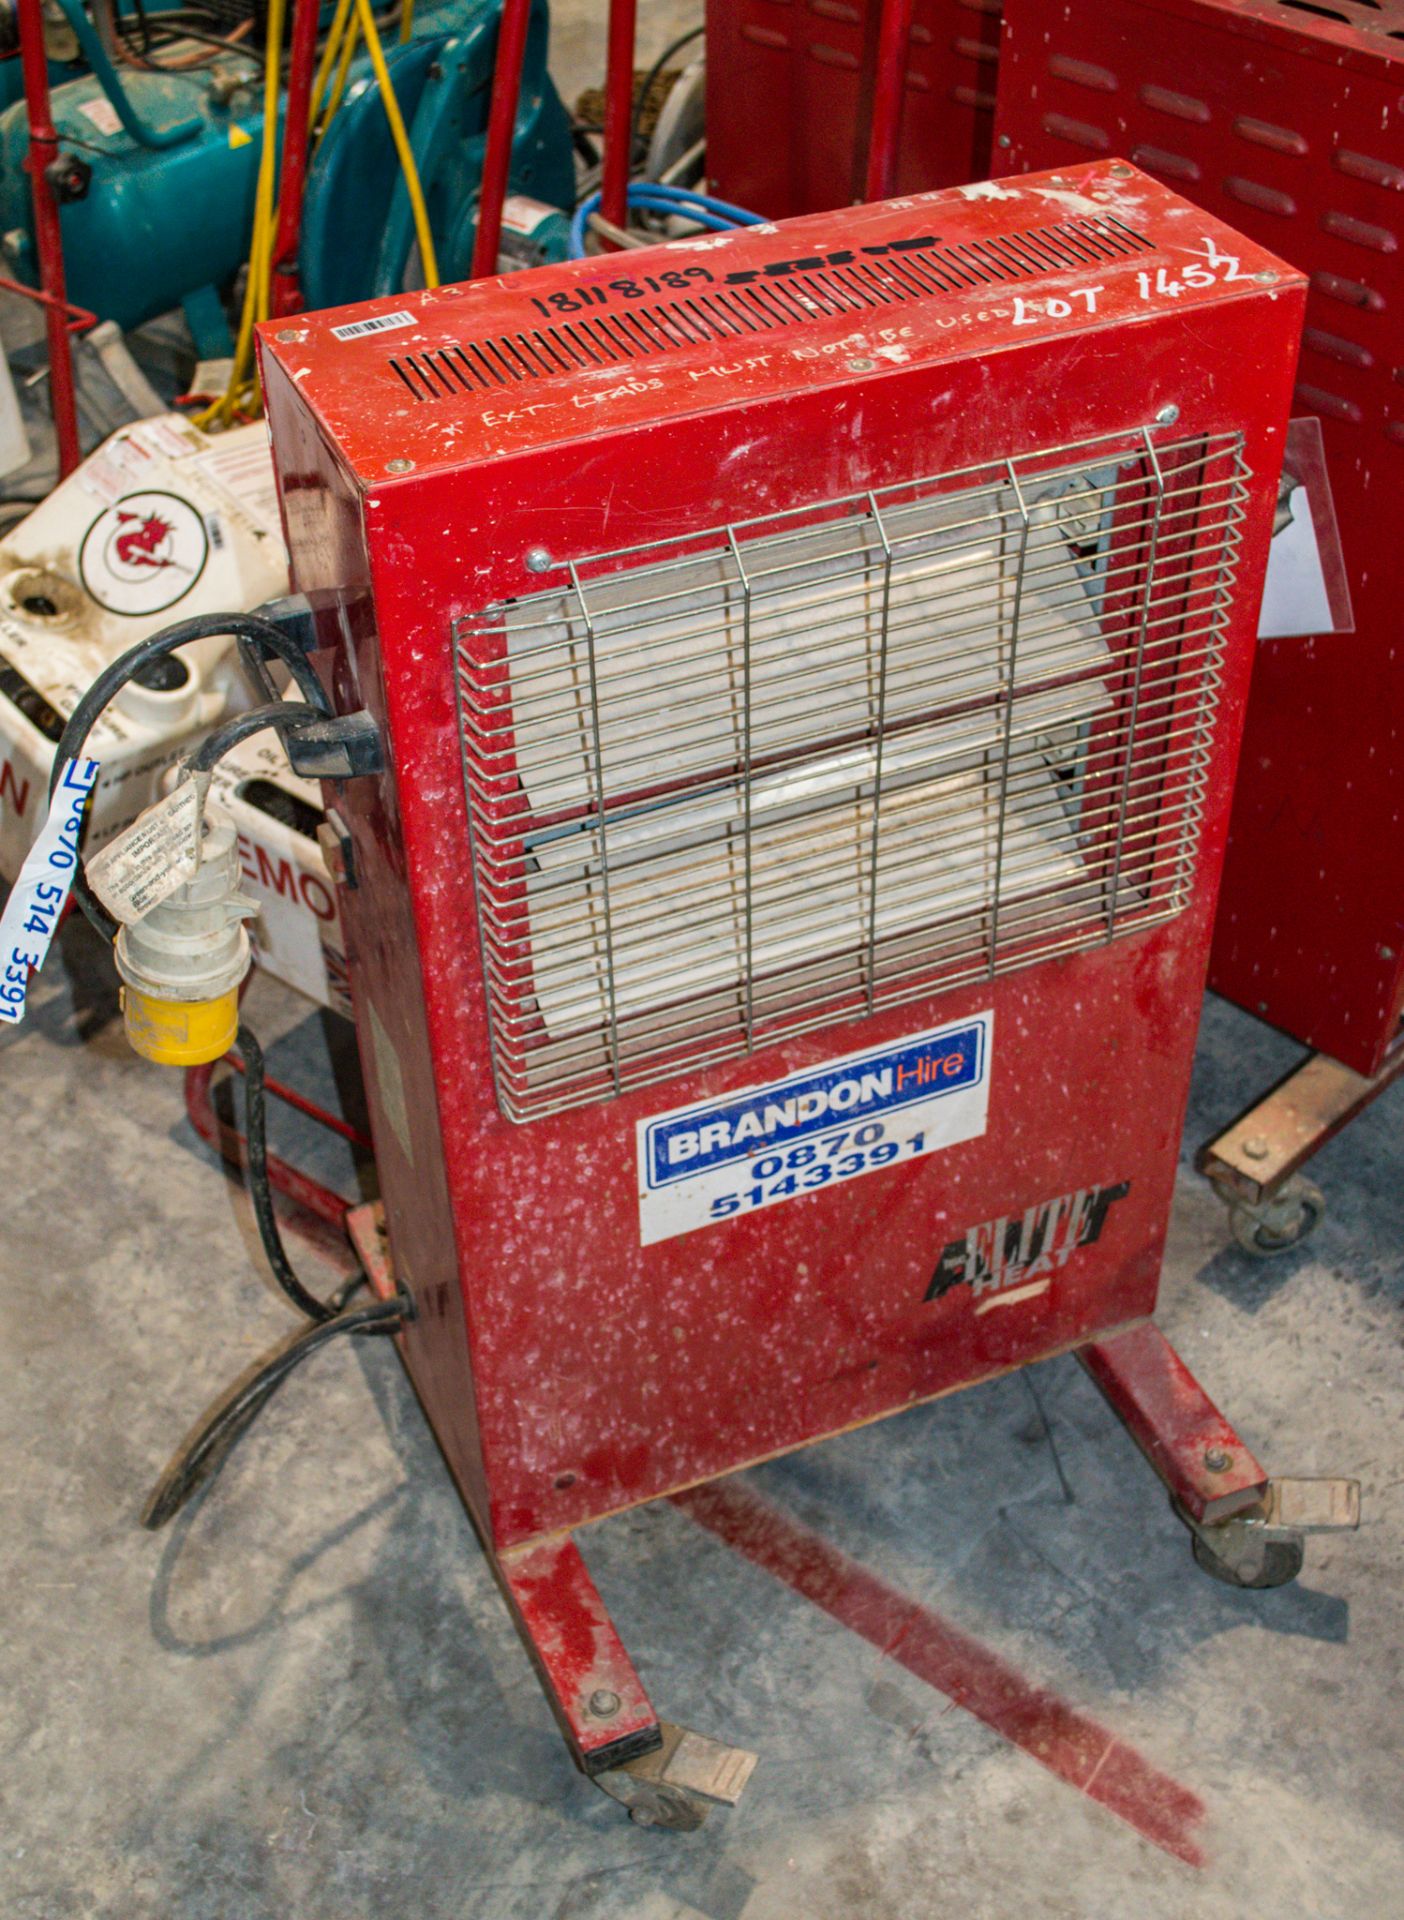 Elite Heat 110v infrared heater 1811-8189